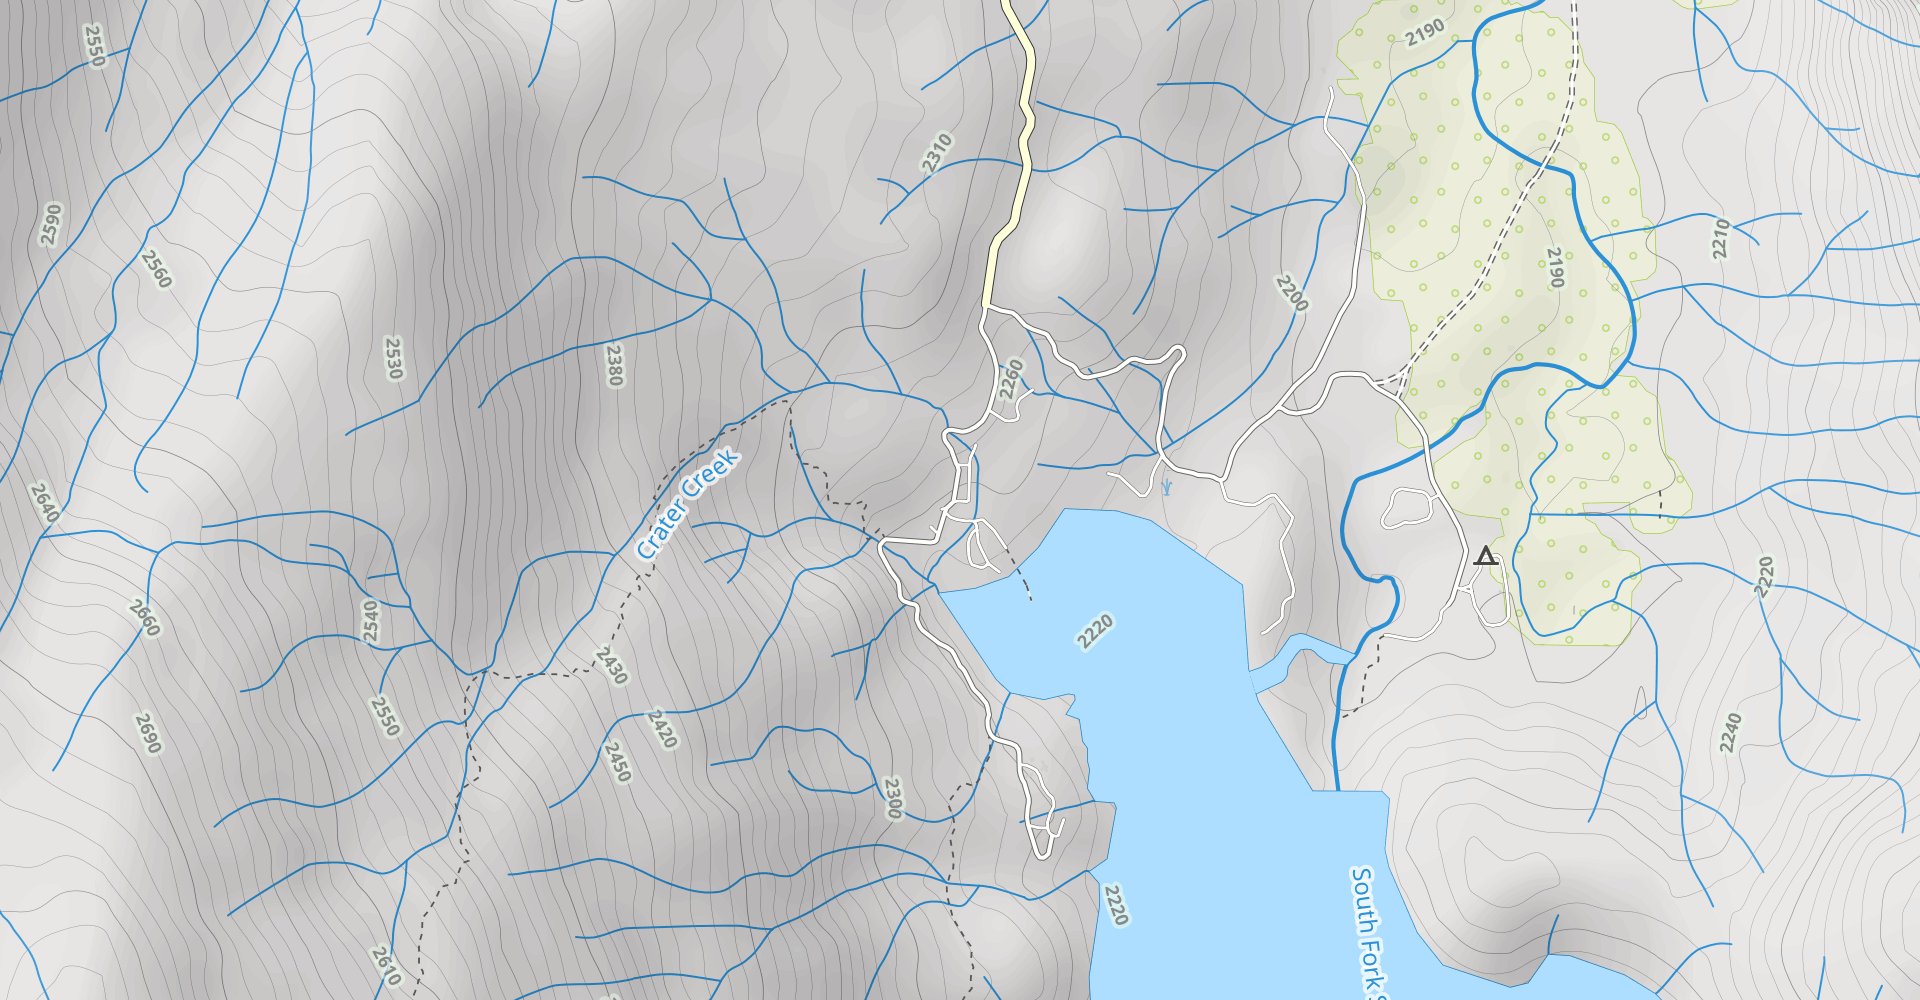 Florence Lake to Edison Lake via John Muir Trail